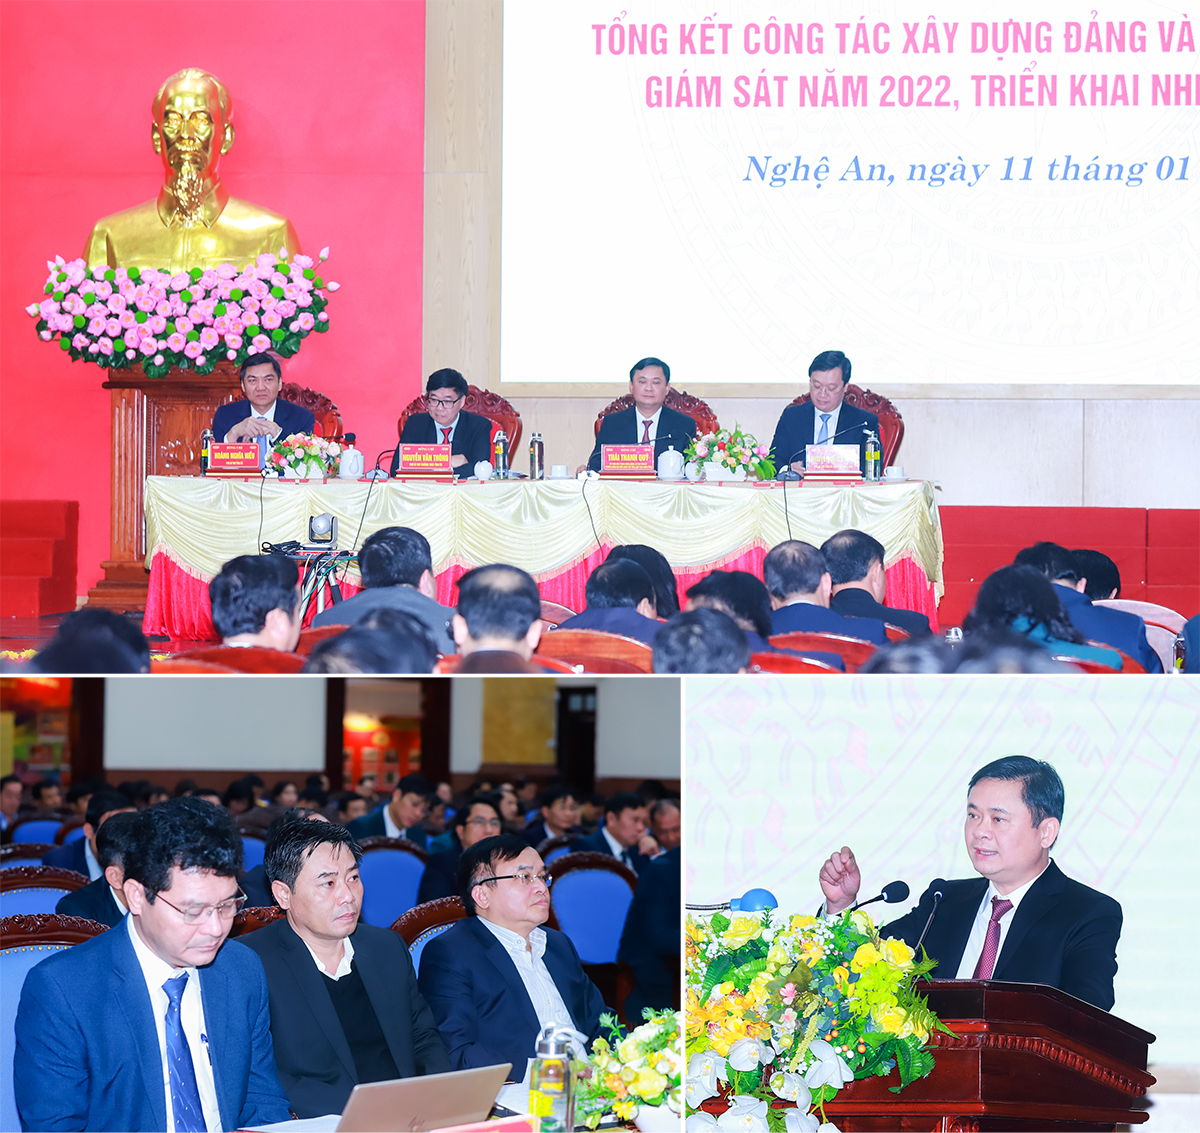 Ban Thường vụ Tỉnh ủy Nghệ An tổ chức tổng kết công tác xây dựng Đảng năm 2022, triển khai nhiệm vụ năm 2023. Ảnh: Thành Duy